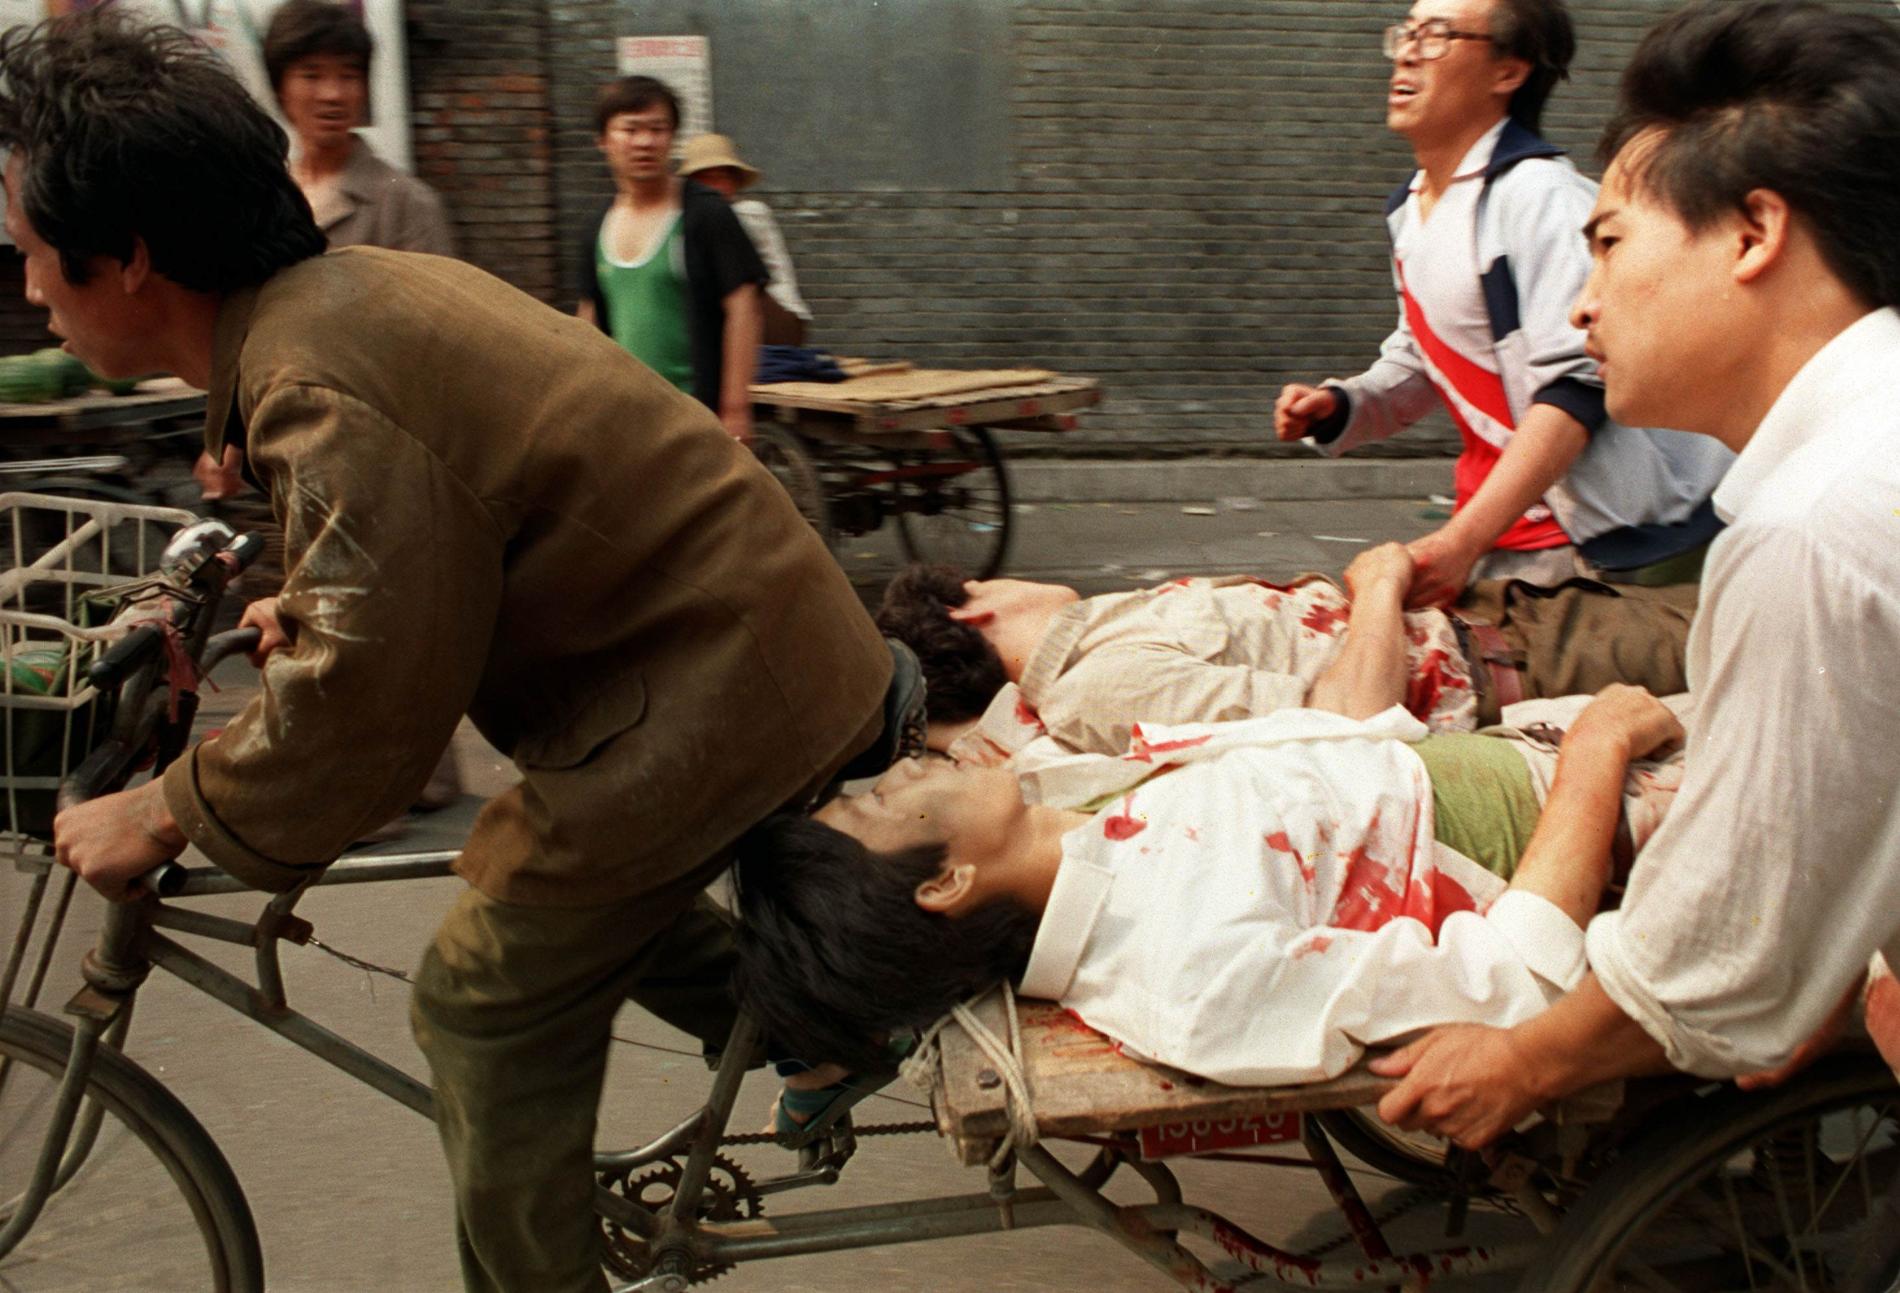 Många av de som skadades under massakern på Himmelska fridens torg i Peking 1989 fördes till sjukhus av meddemonstranter på cykel. Än i dag är det oklart hur många som miste livet i den kinesiska militärens angrepp på demonstrationen, men tusentals tros ha dödats eller skadats. Arkivbild.